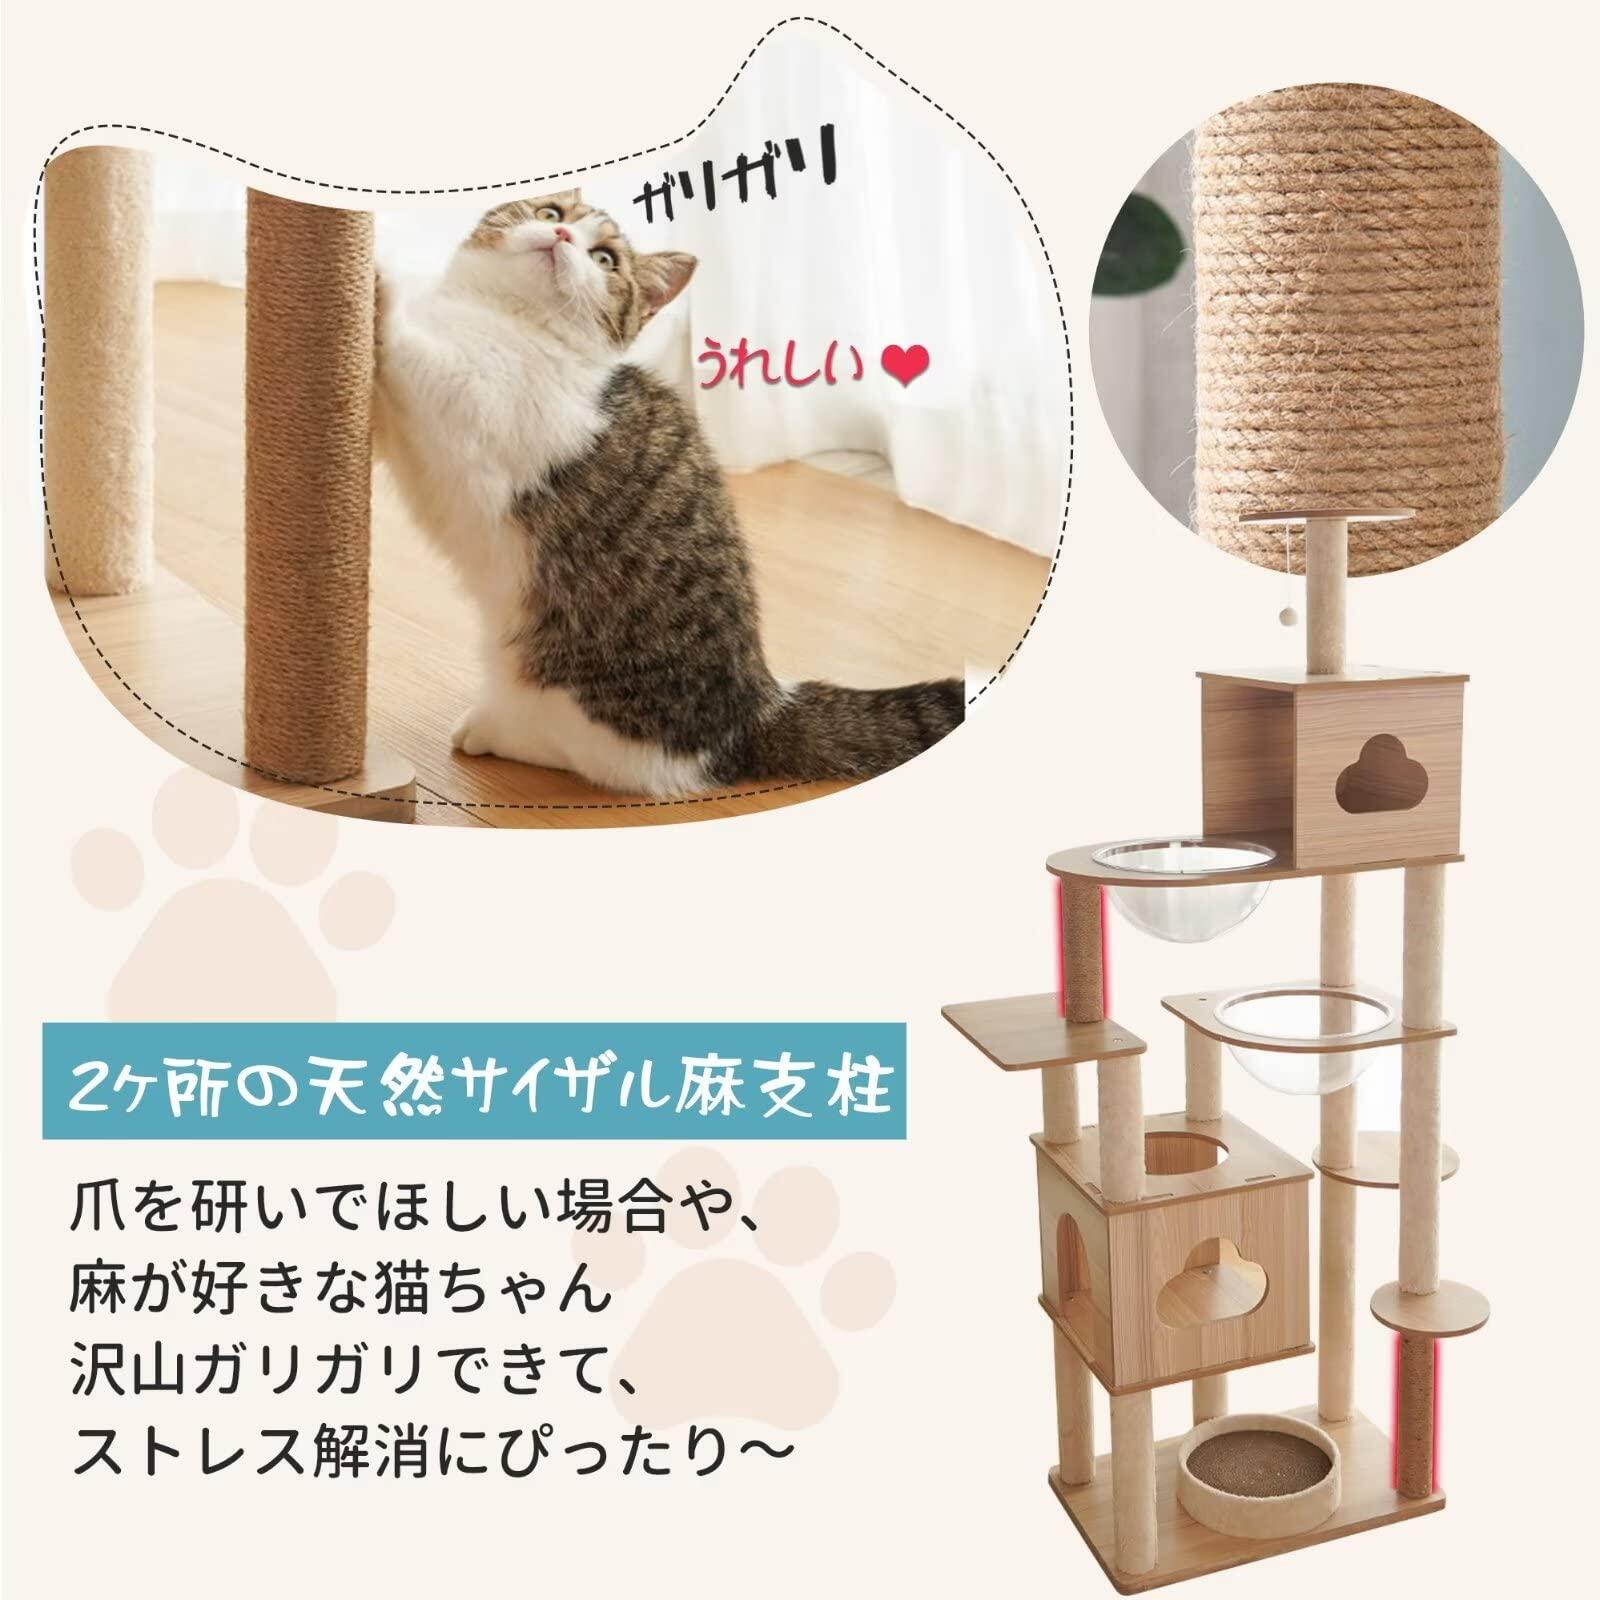 キャットタワー 木製 据え置き スリム 猫タワー 大型猫 おしゃれ 省